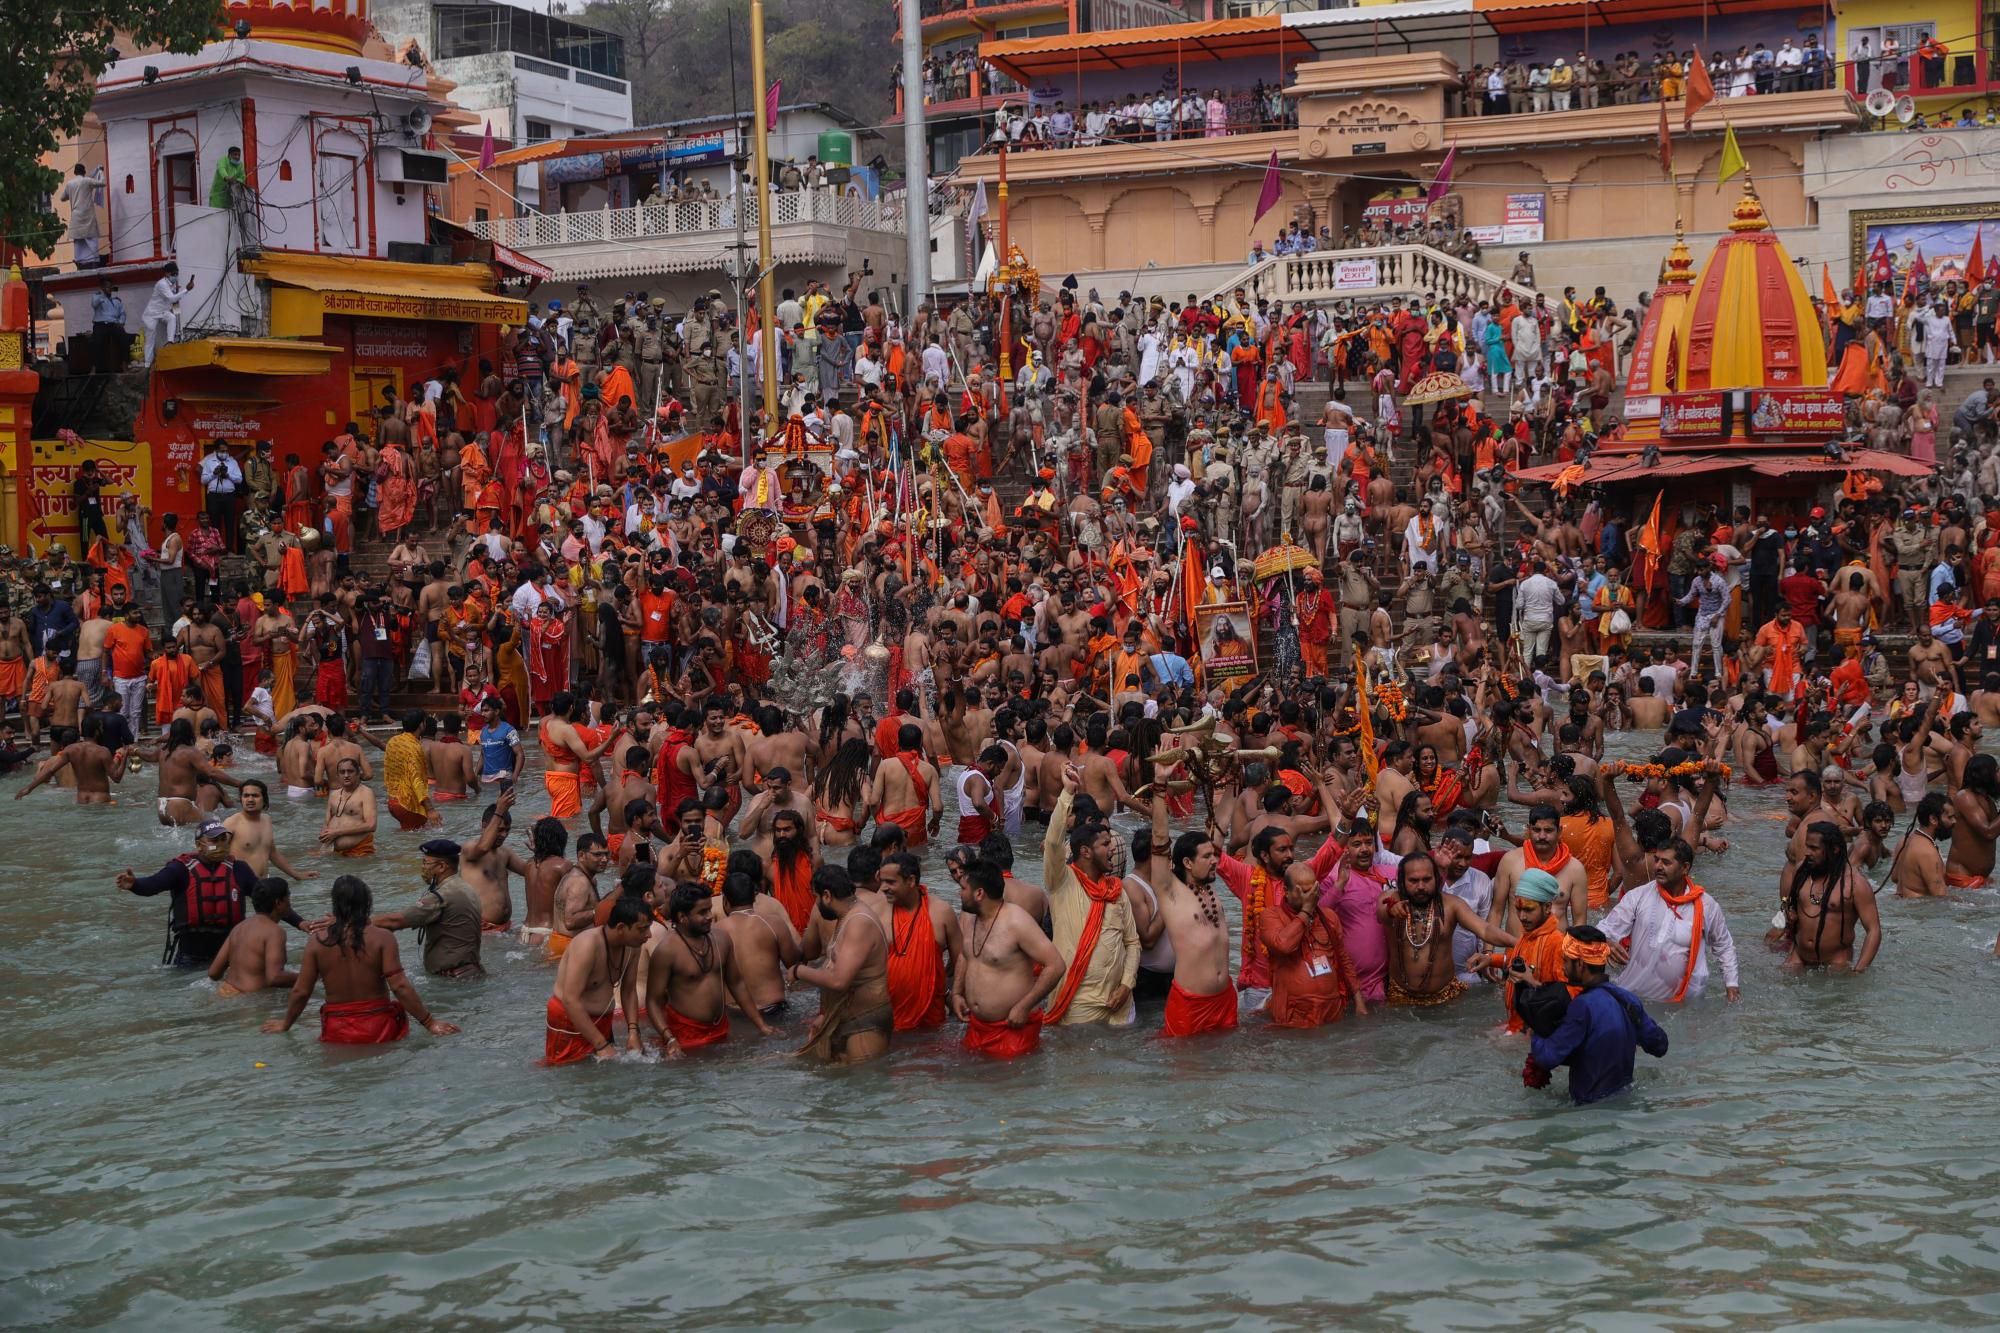 Los devotos toman baños sagrados en el río Ganges durante el Kumbh Mela, o festival de jarras, una de las peregrinaciones más sagradas del hinduismo, en Haridwar, estado norteño de Uttarakhand, India, el lunes 12 de abril de 2021. Decenas de miles de devotos hindúes se reunieron por el río Ganges para oraciones especiales el lunes, muchas de ellas burlando las prácticas de distanciamiento social a medida que el coronavirus se propaga en la India a una velocidad récord. (AP Photo/Karma Sonam)